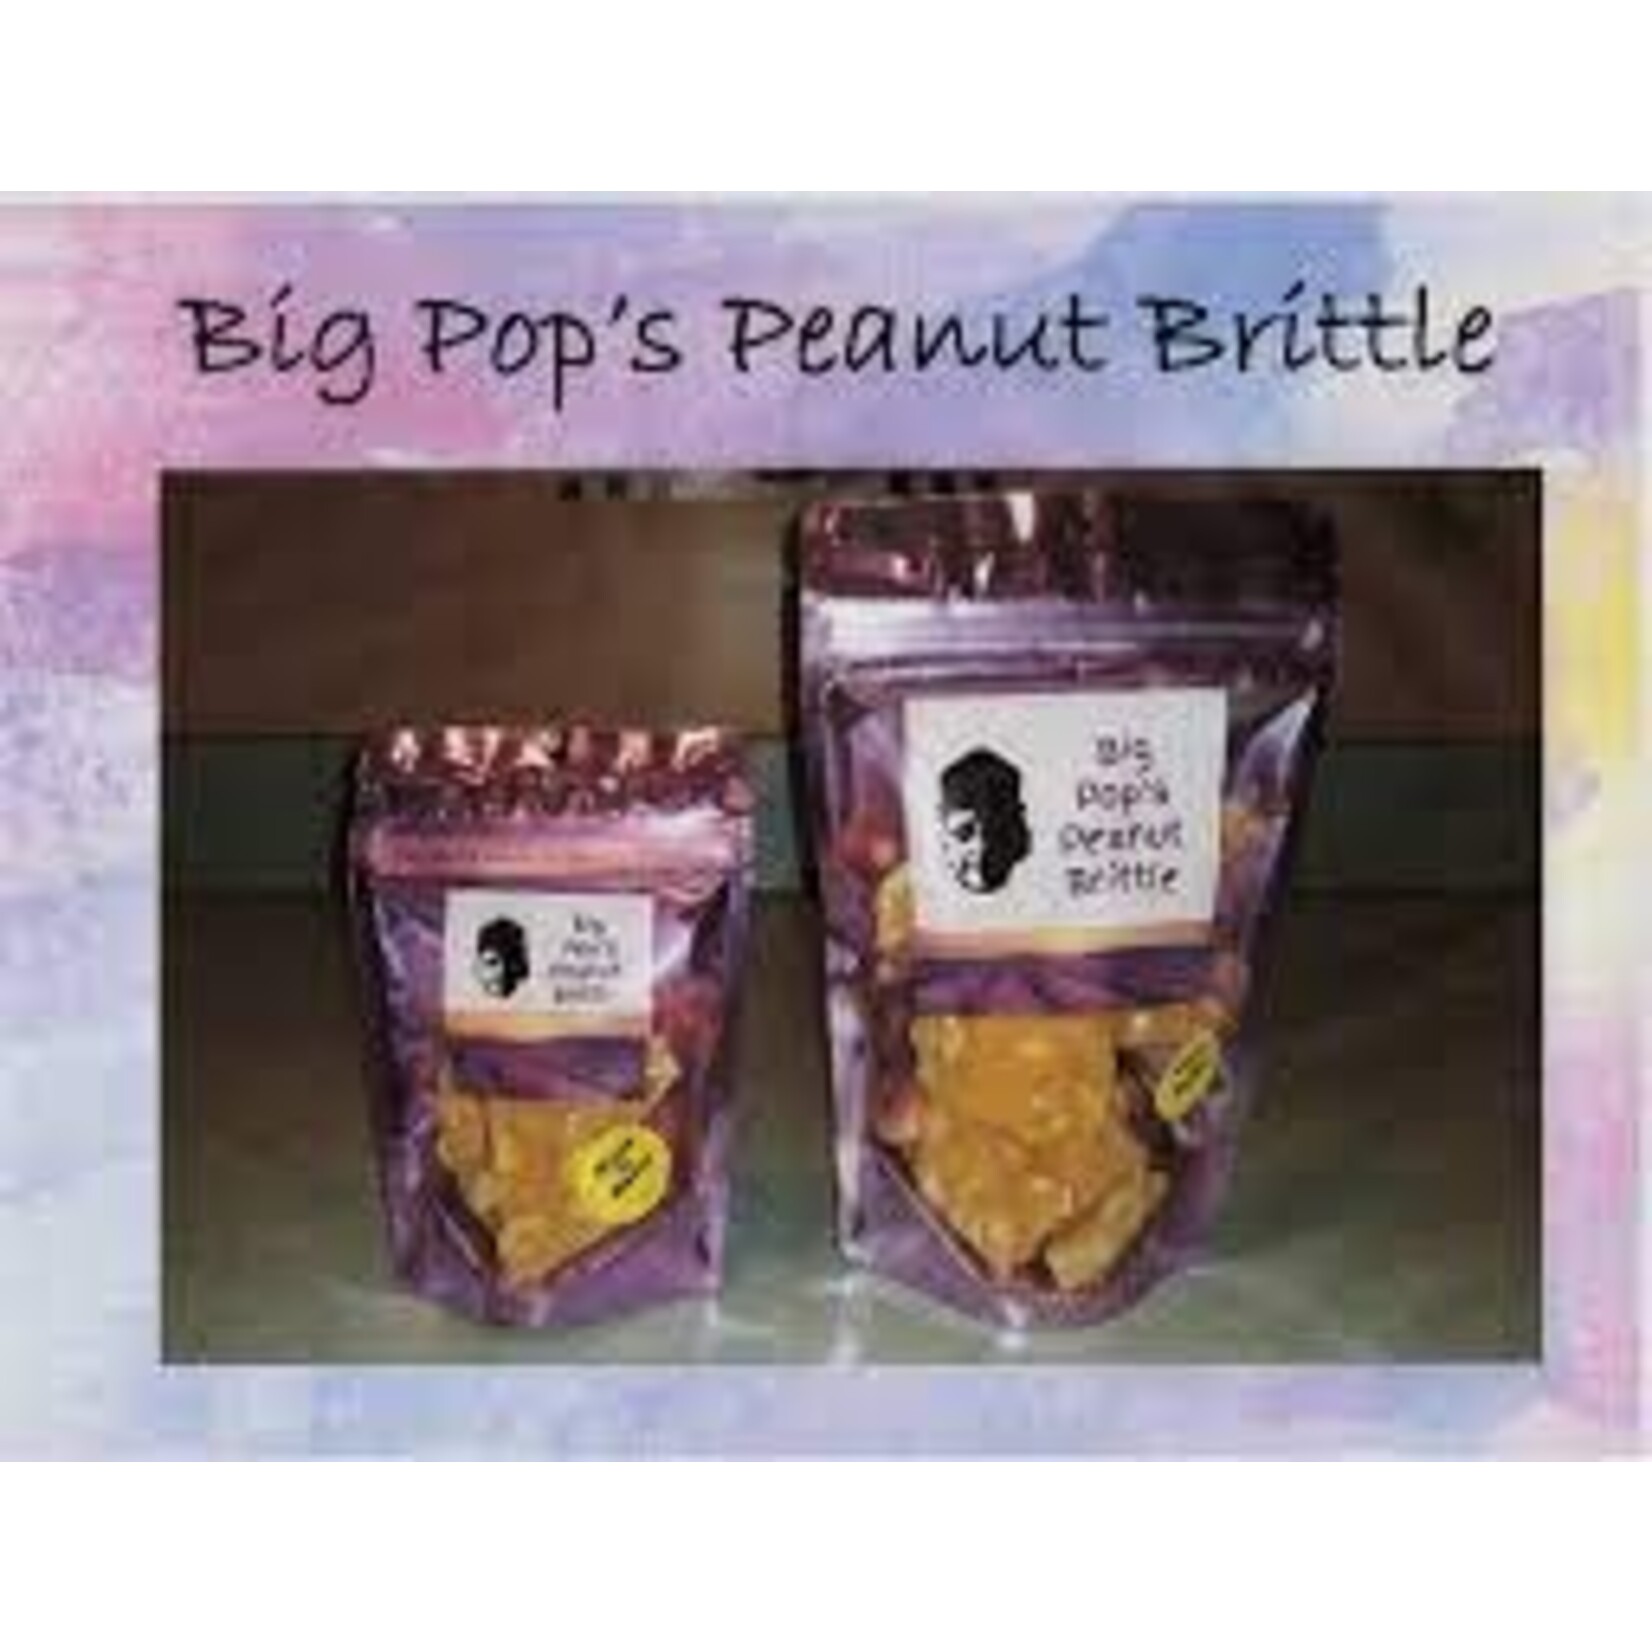 Big Pop's Peanut Brittle LG